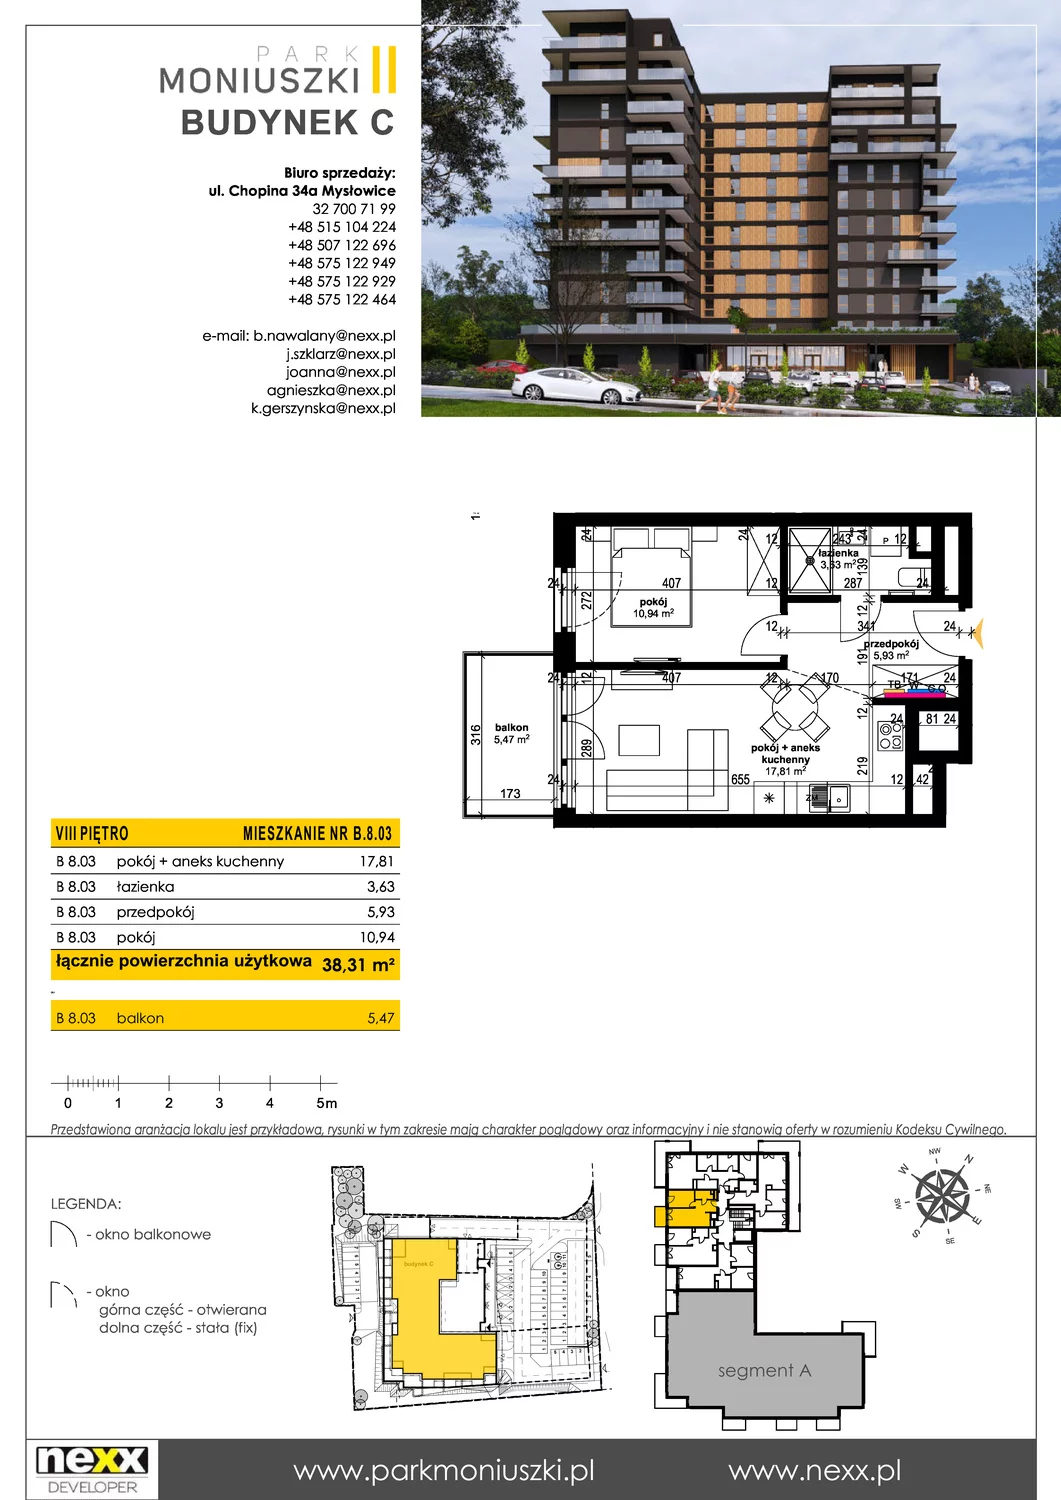 Mieszkanie 38,31 m², piętro 8, oferta nr B 8.03, Osiedle Park Moniuszki, Mysłowice, ul. Okrzei / Wielka Skotnica